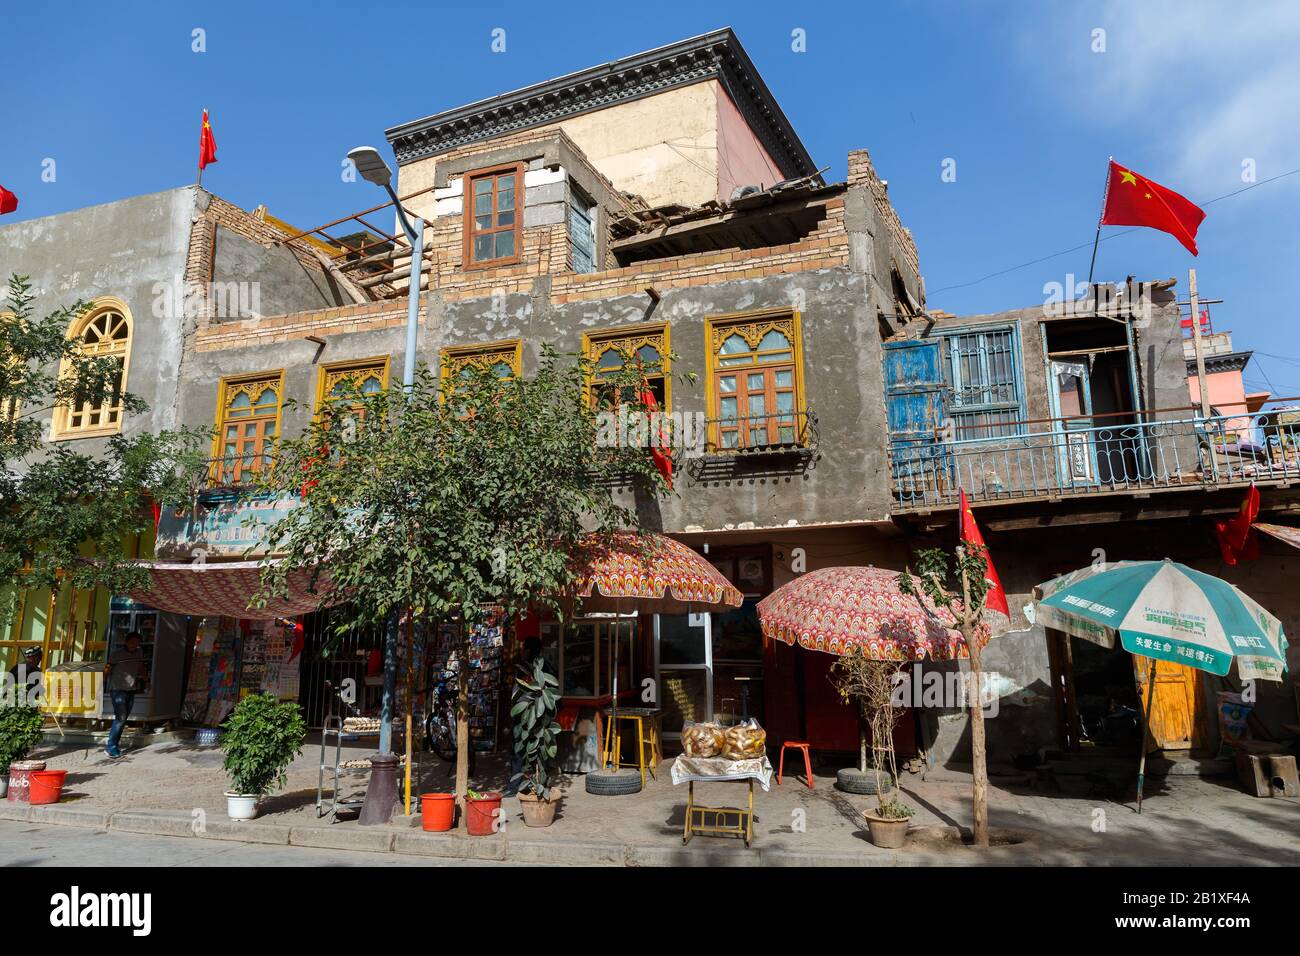 Haus in der Kaschgar-Altstadt. An den Seitenwänden und auf dem Gebäude sind mehrere chinesische Flaggen angebracht. Während des chinesischen Nationalfeiertags gefangen genommen. Stockfoto